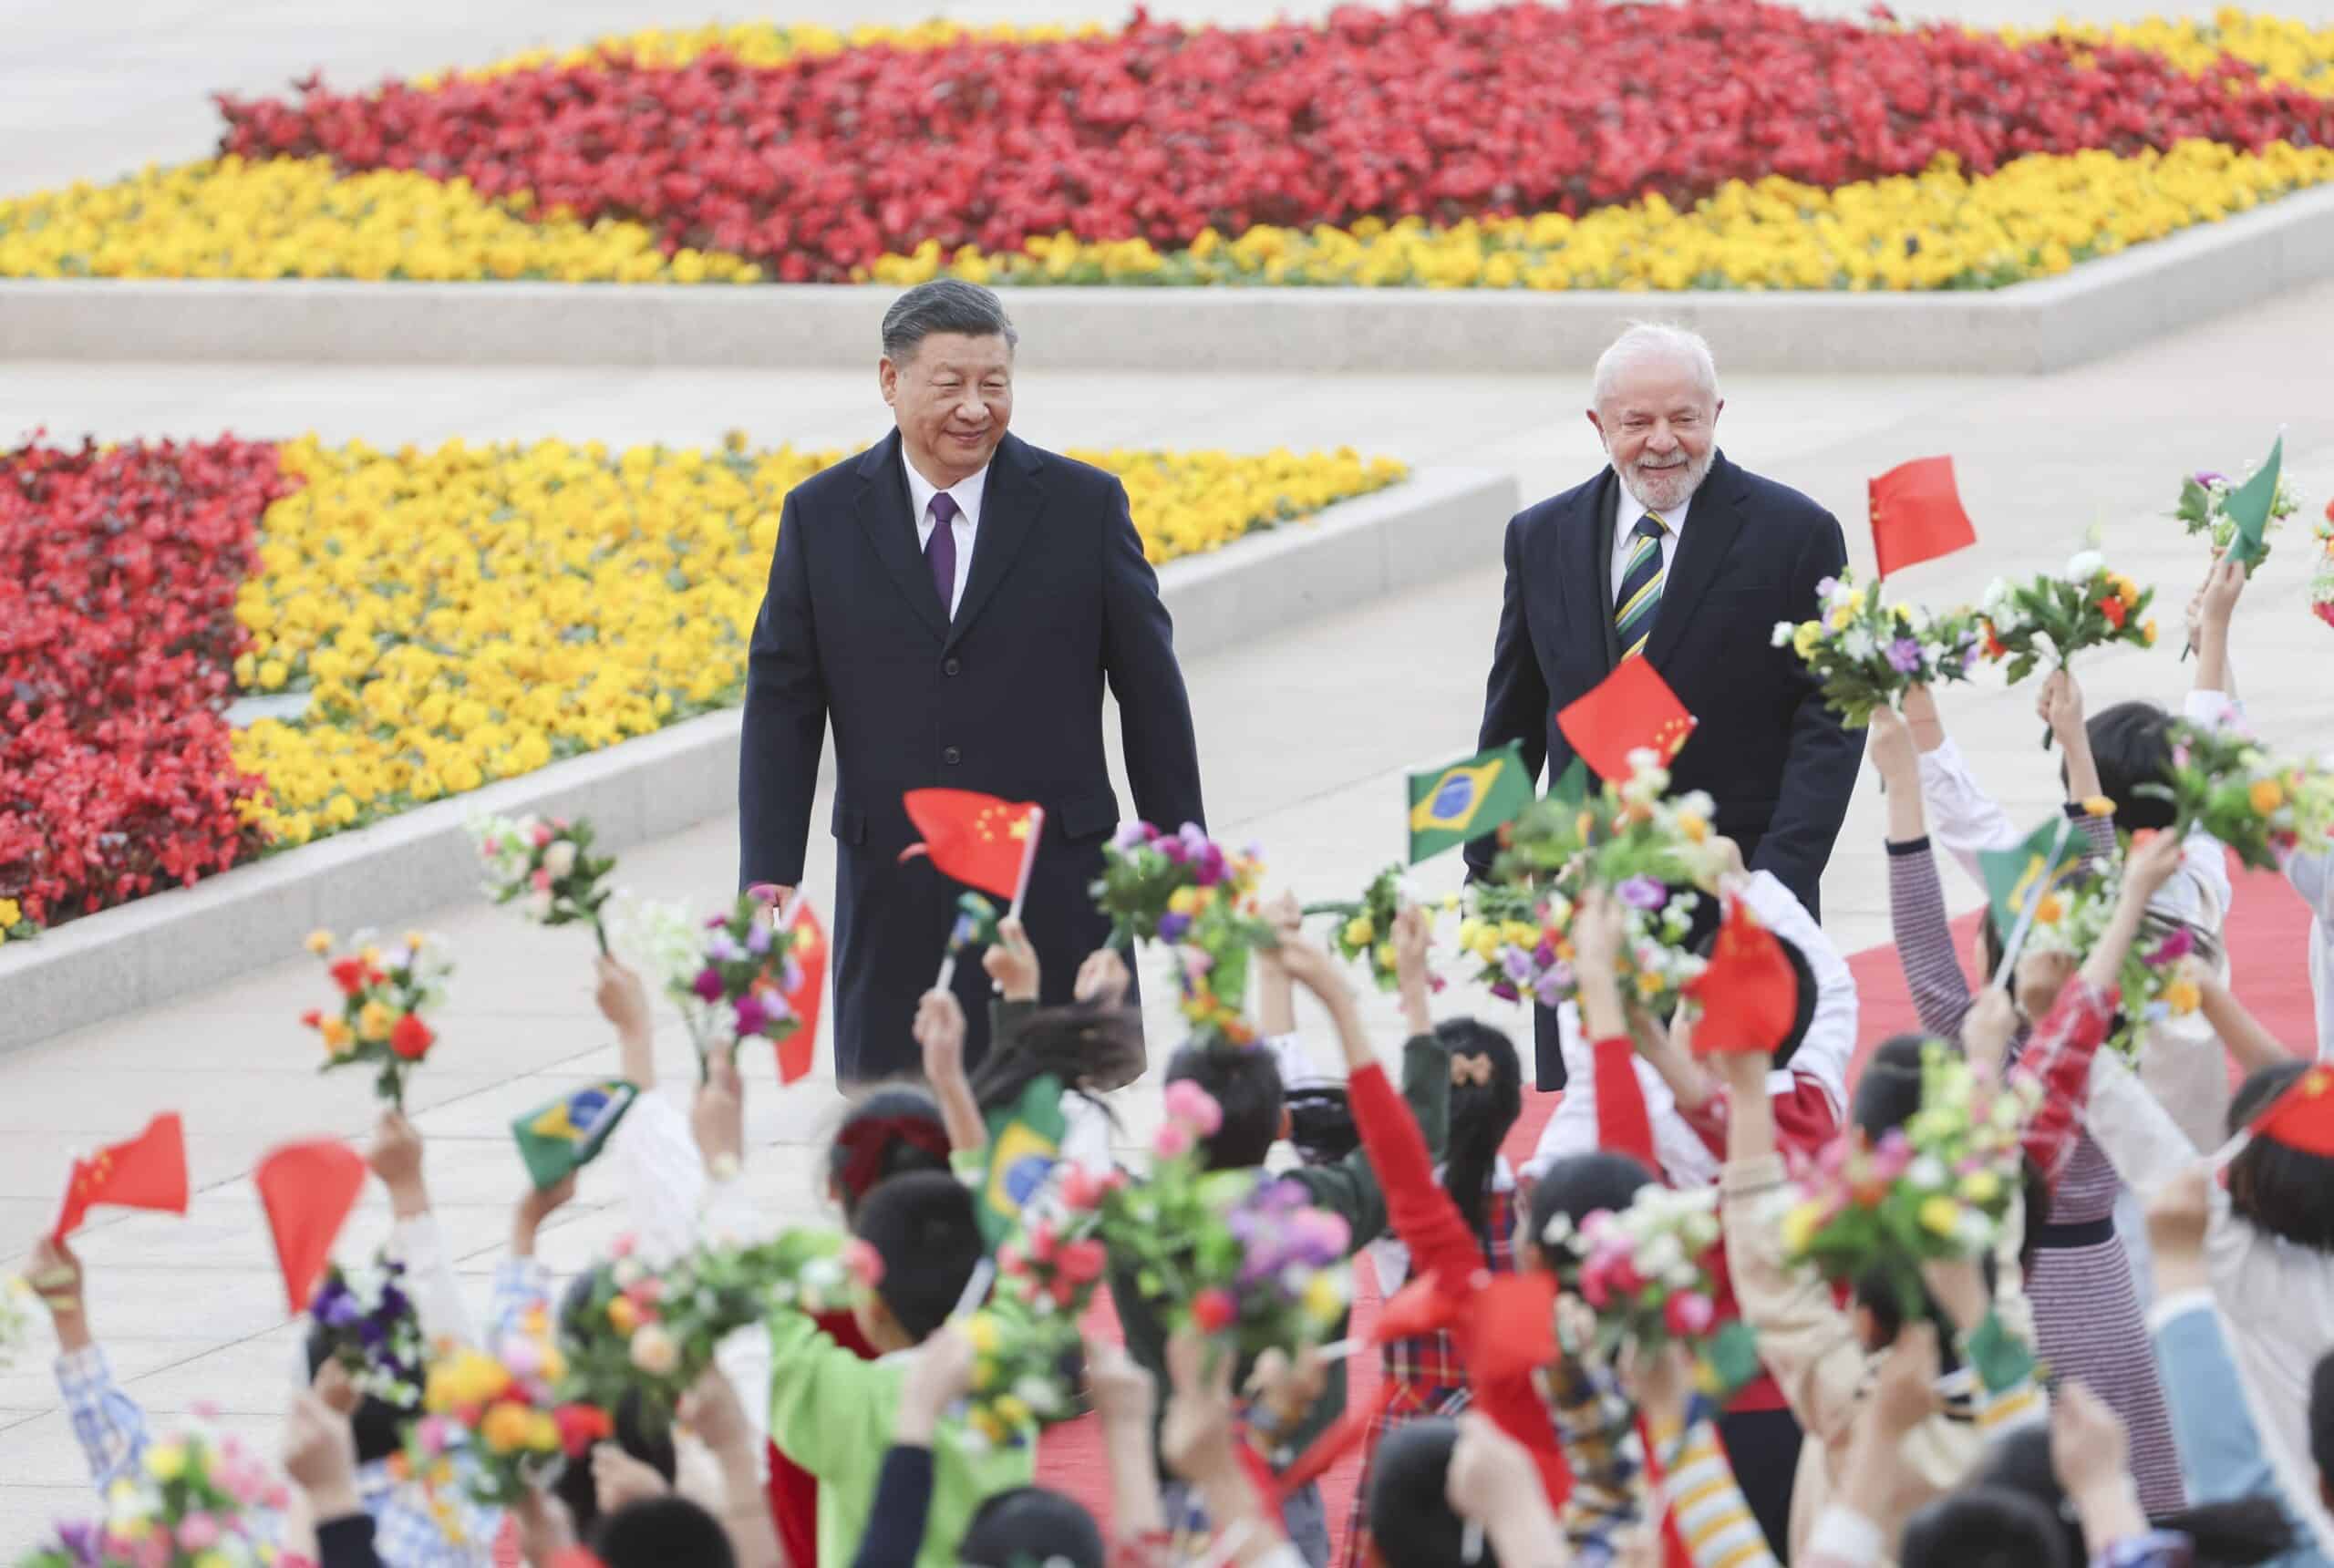 الرئيس البرازيلي والرئيس الصيني